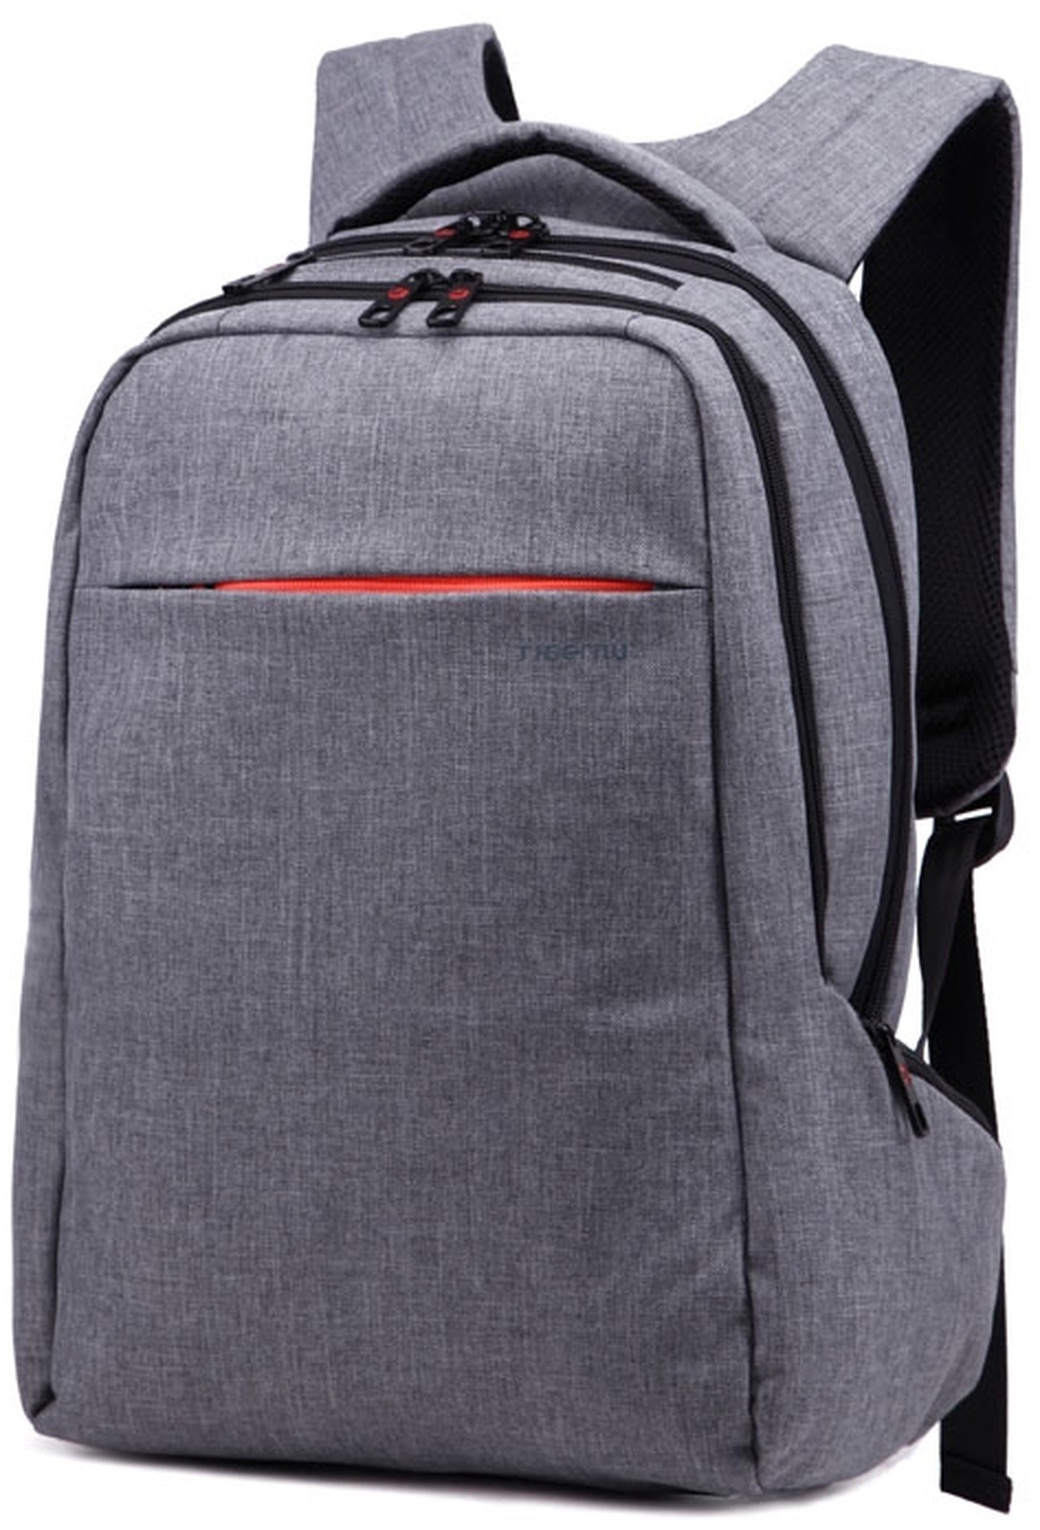 Рюкзак Tigernu для ноутбука 15" T-B3130 серый фото